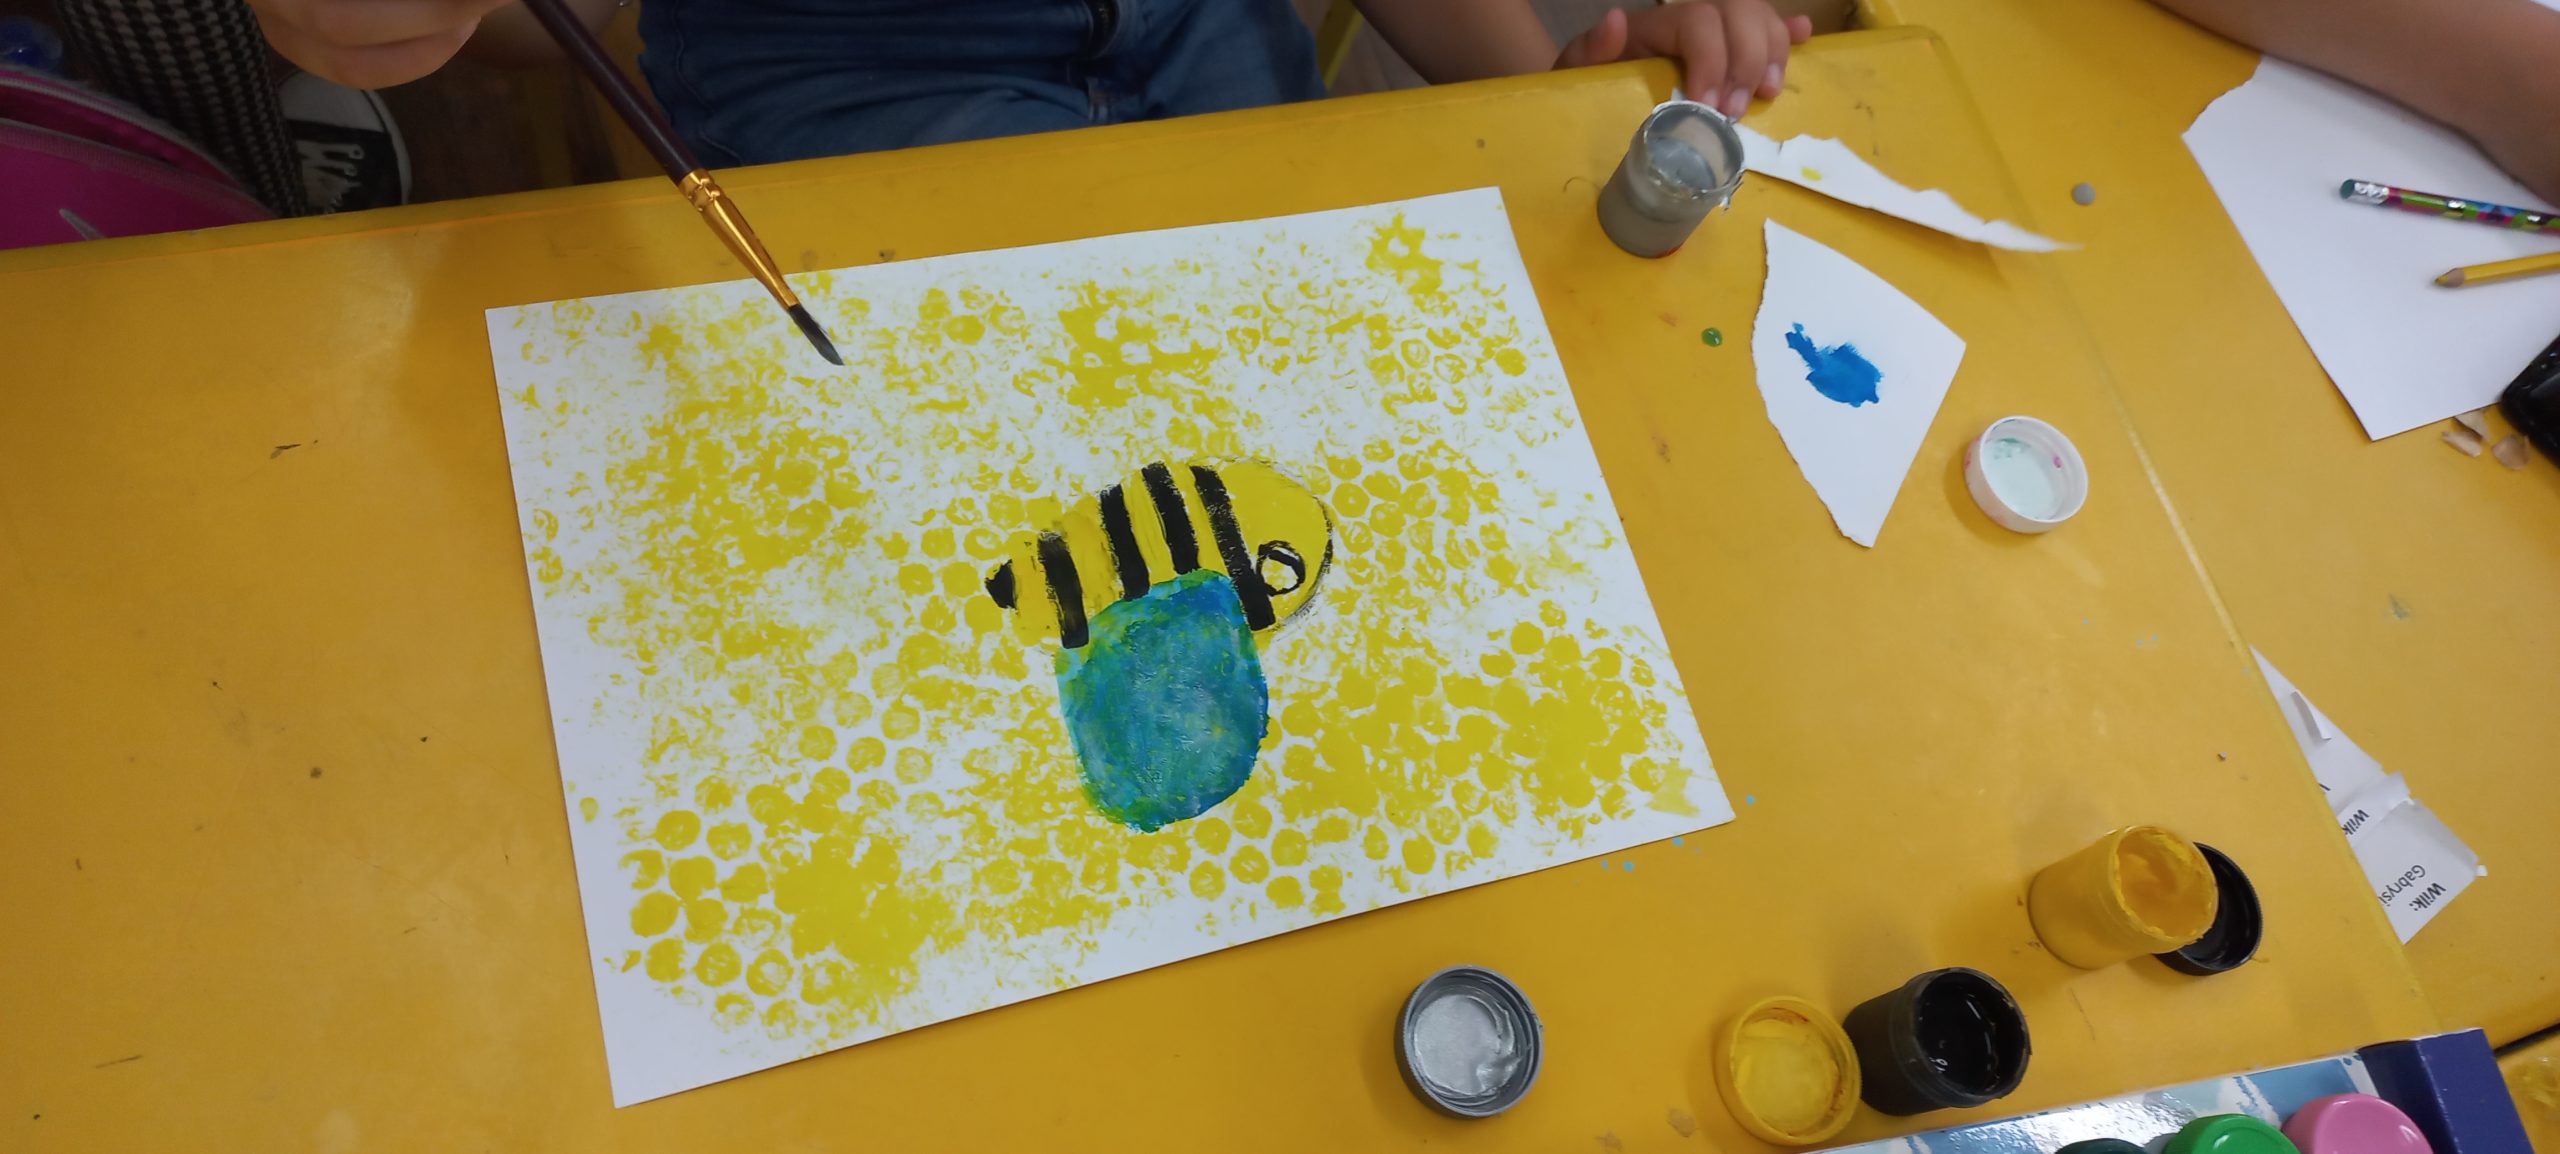 na białej kartce namalowana pszczółka i plastry miodu